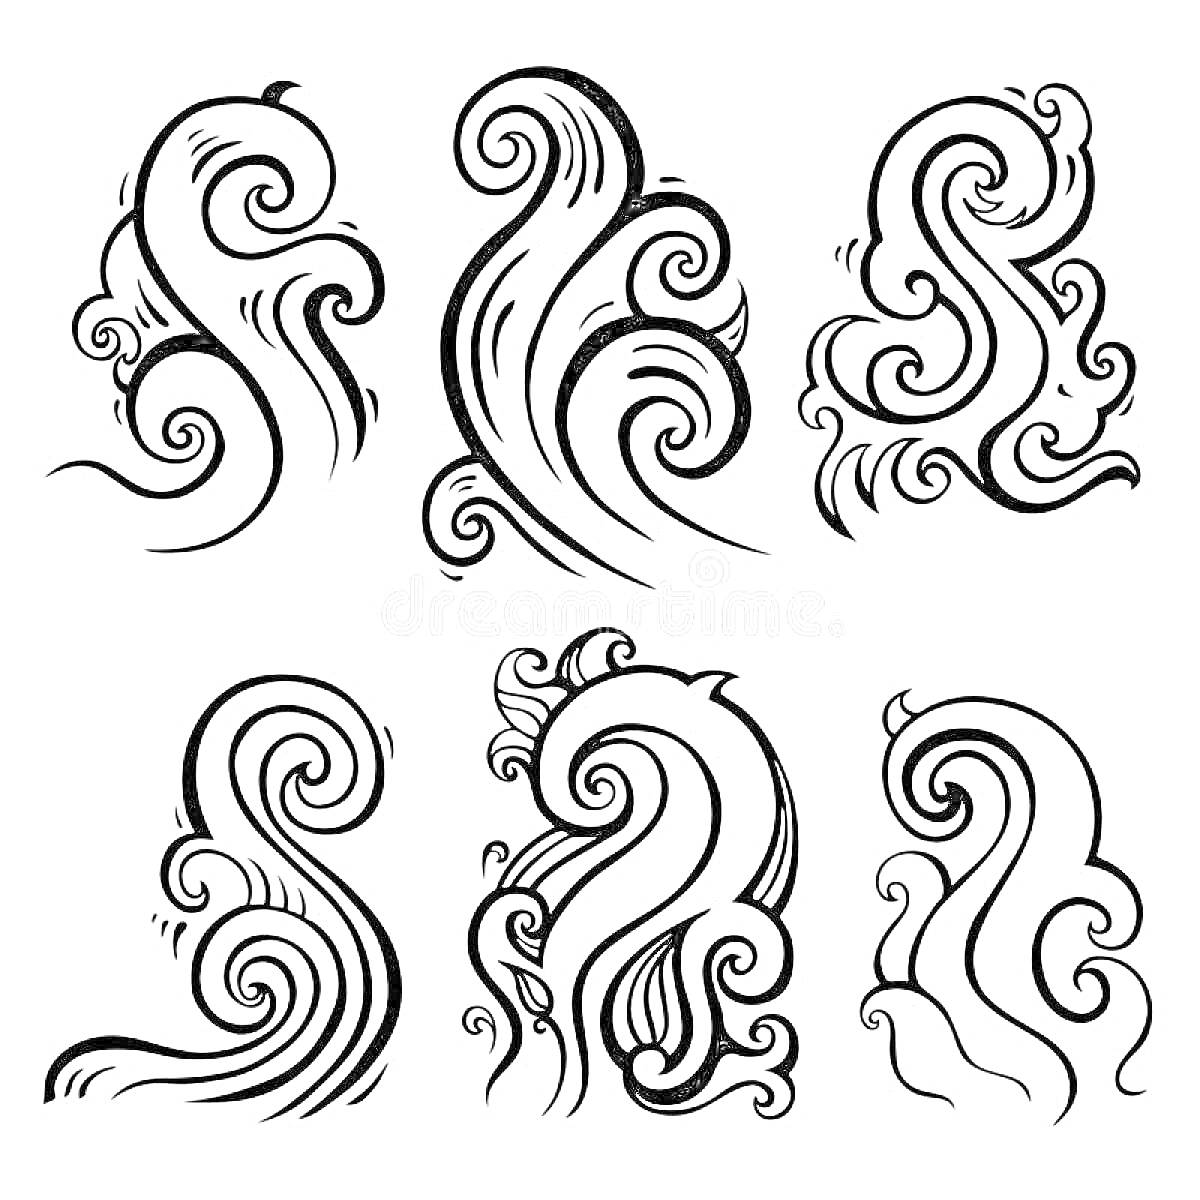 Раскраска Волны в различных стилизованных формах - шесть различных узоров волн с завитками и линиями.